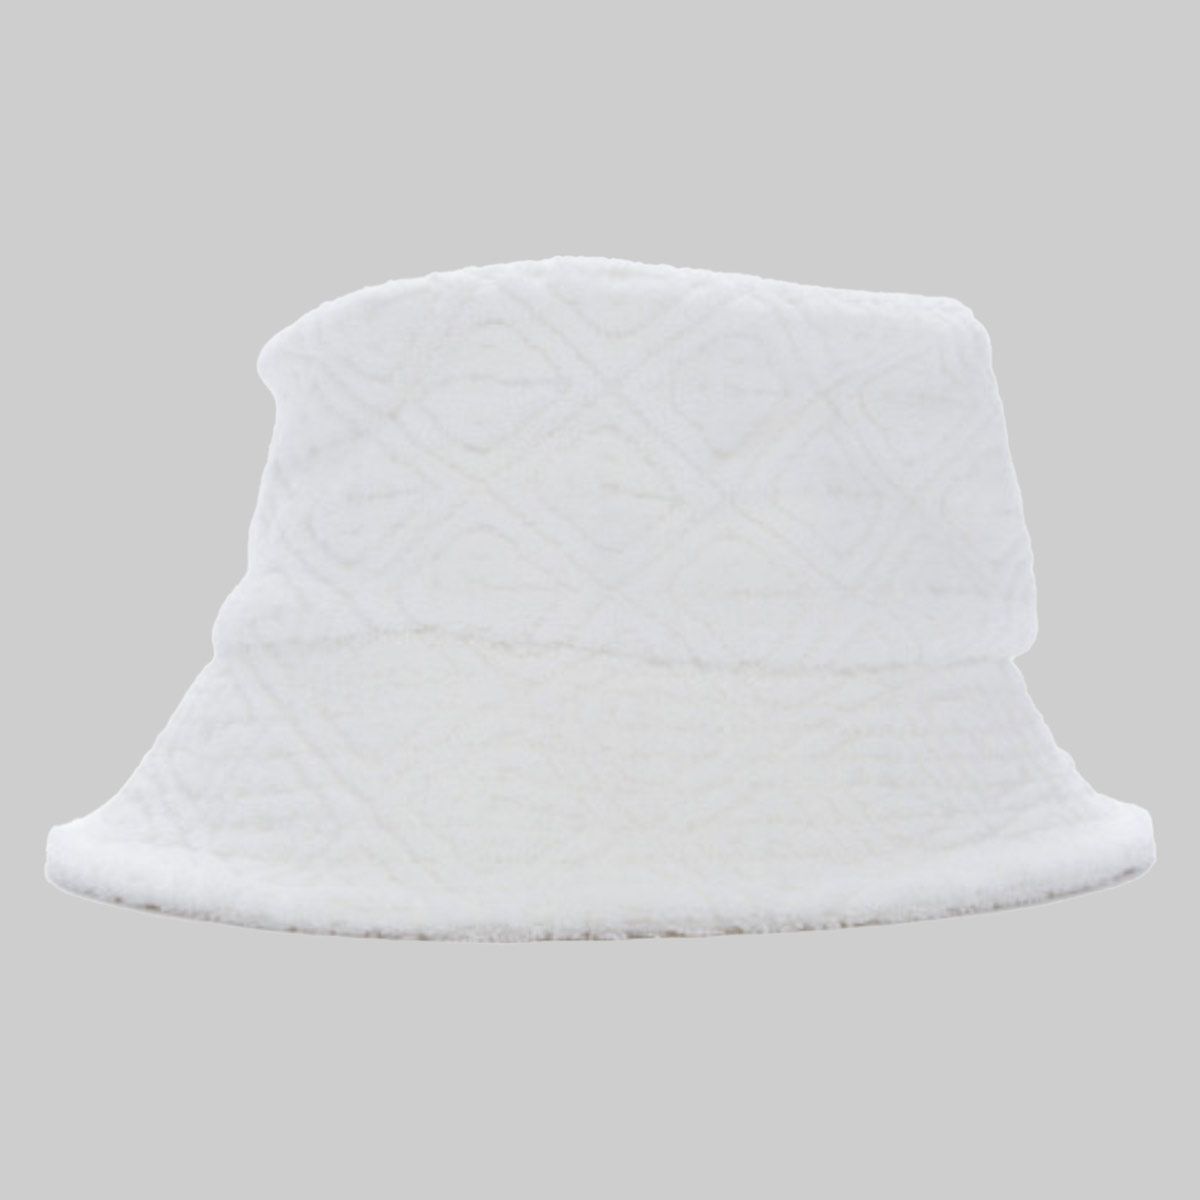 Monogram Terrycloth Bucket Hat